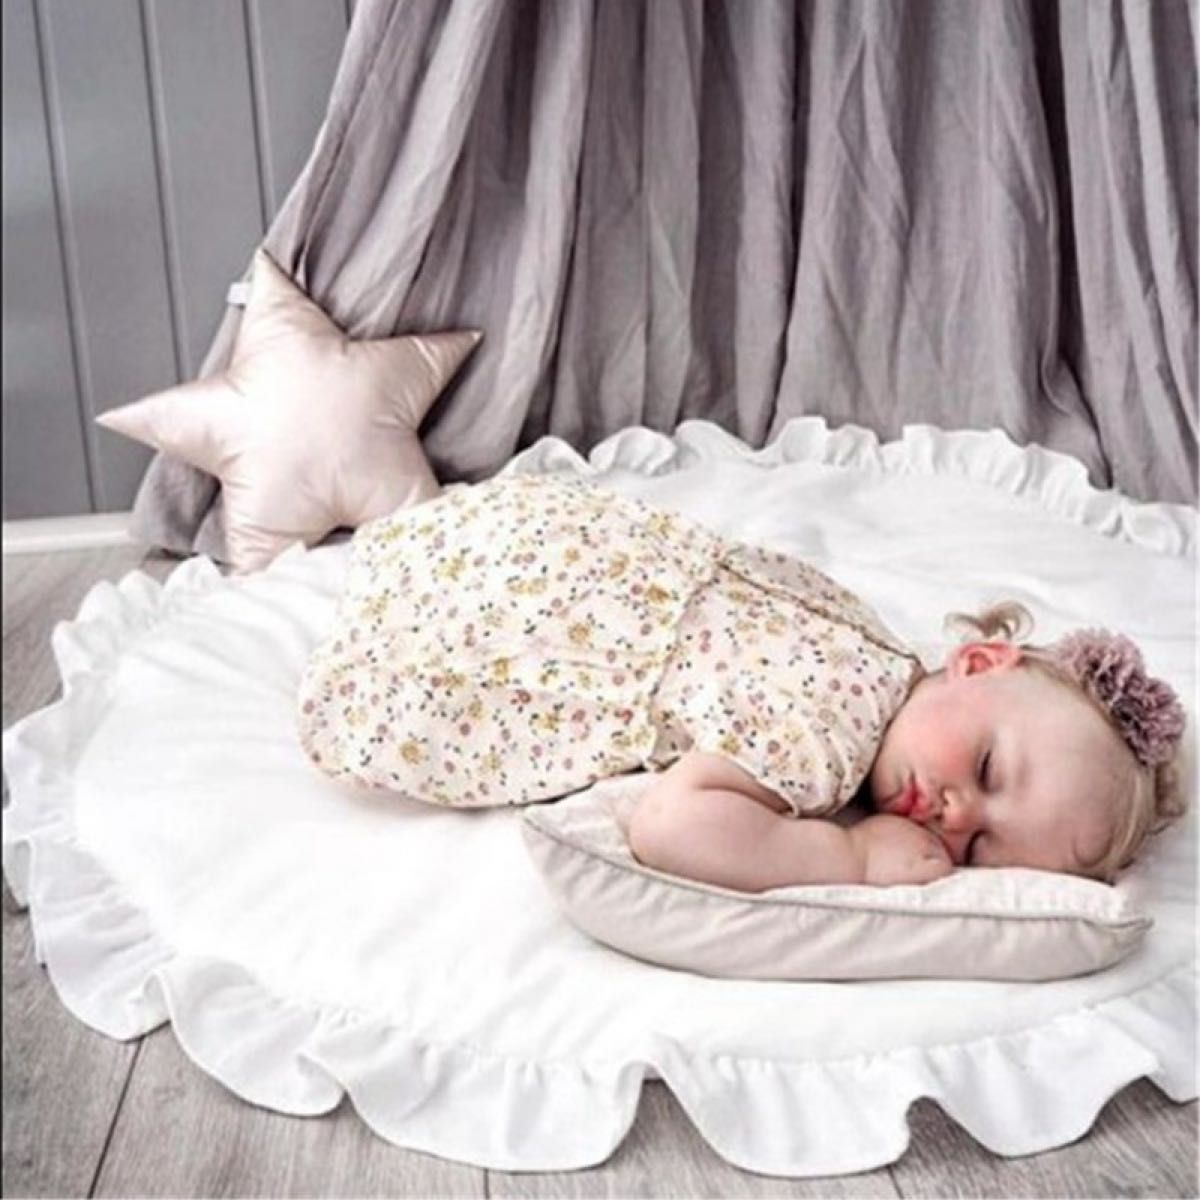 ベビーマット ホワイト フリル サニーマット 洗える お昼寝 撮影 丸型 布団  オールシーズン 洗える 白 赤ちゃん 